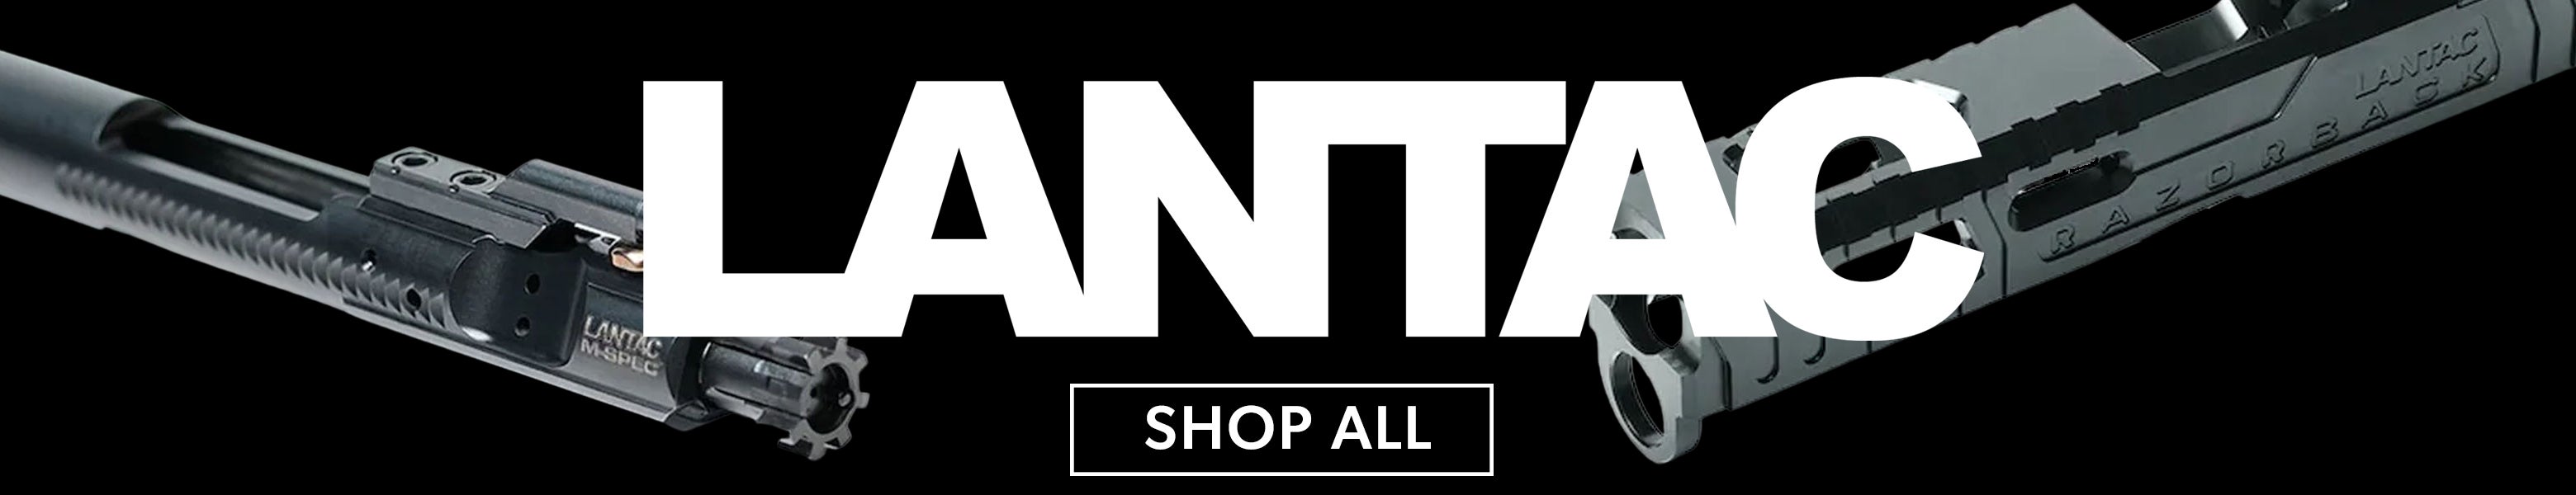 Lantac Shop All Footer